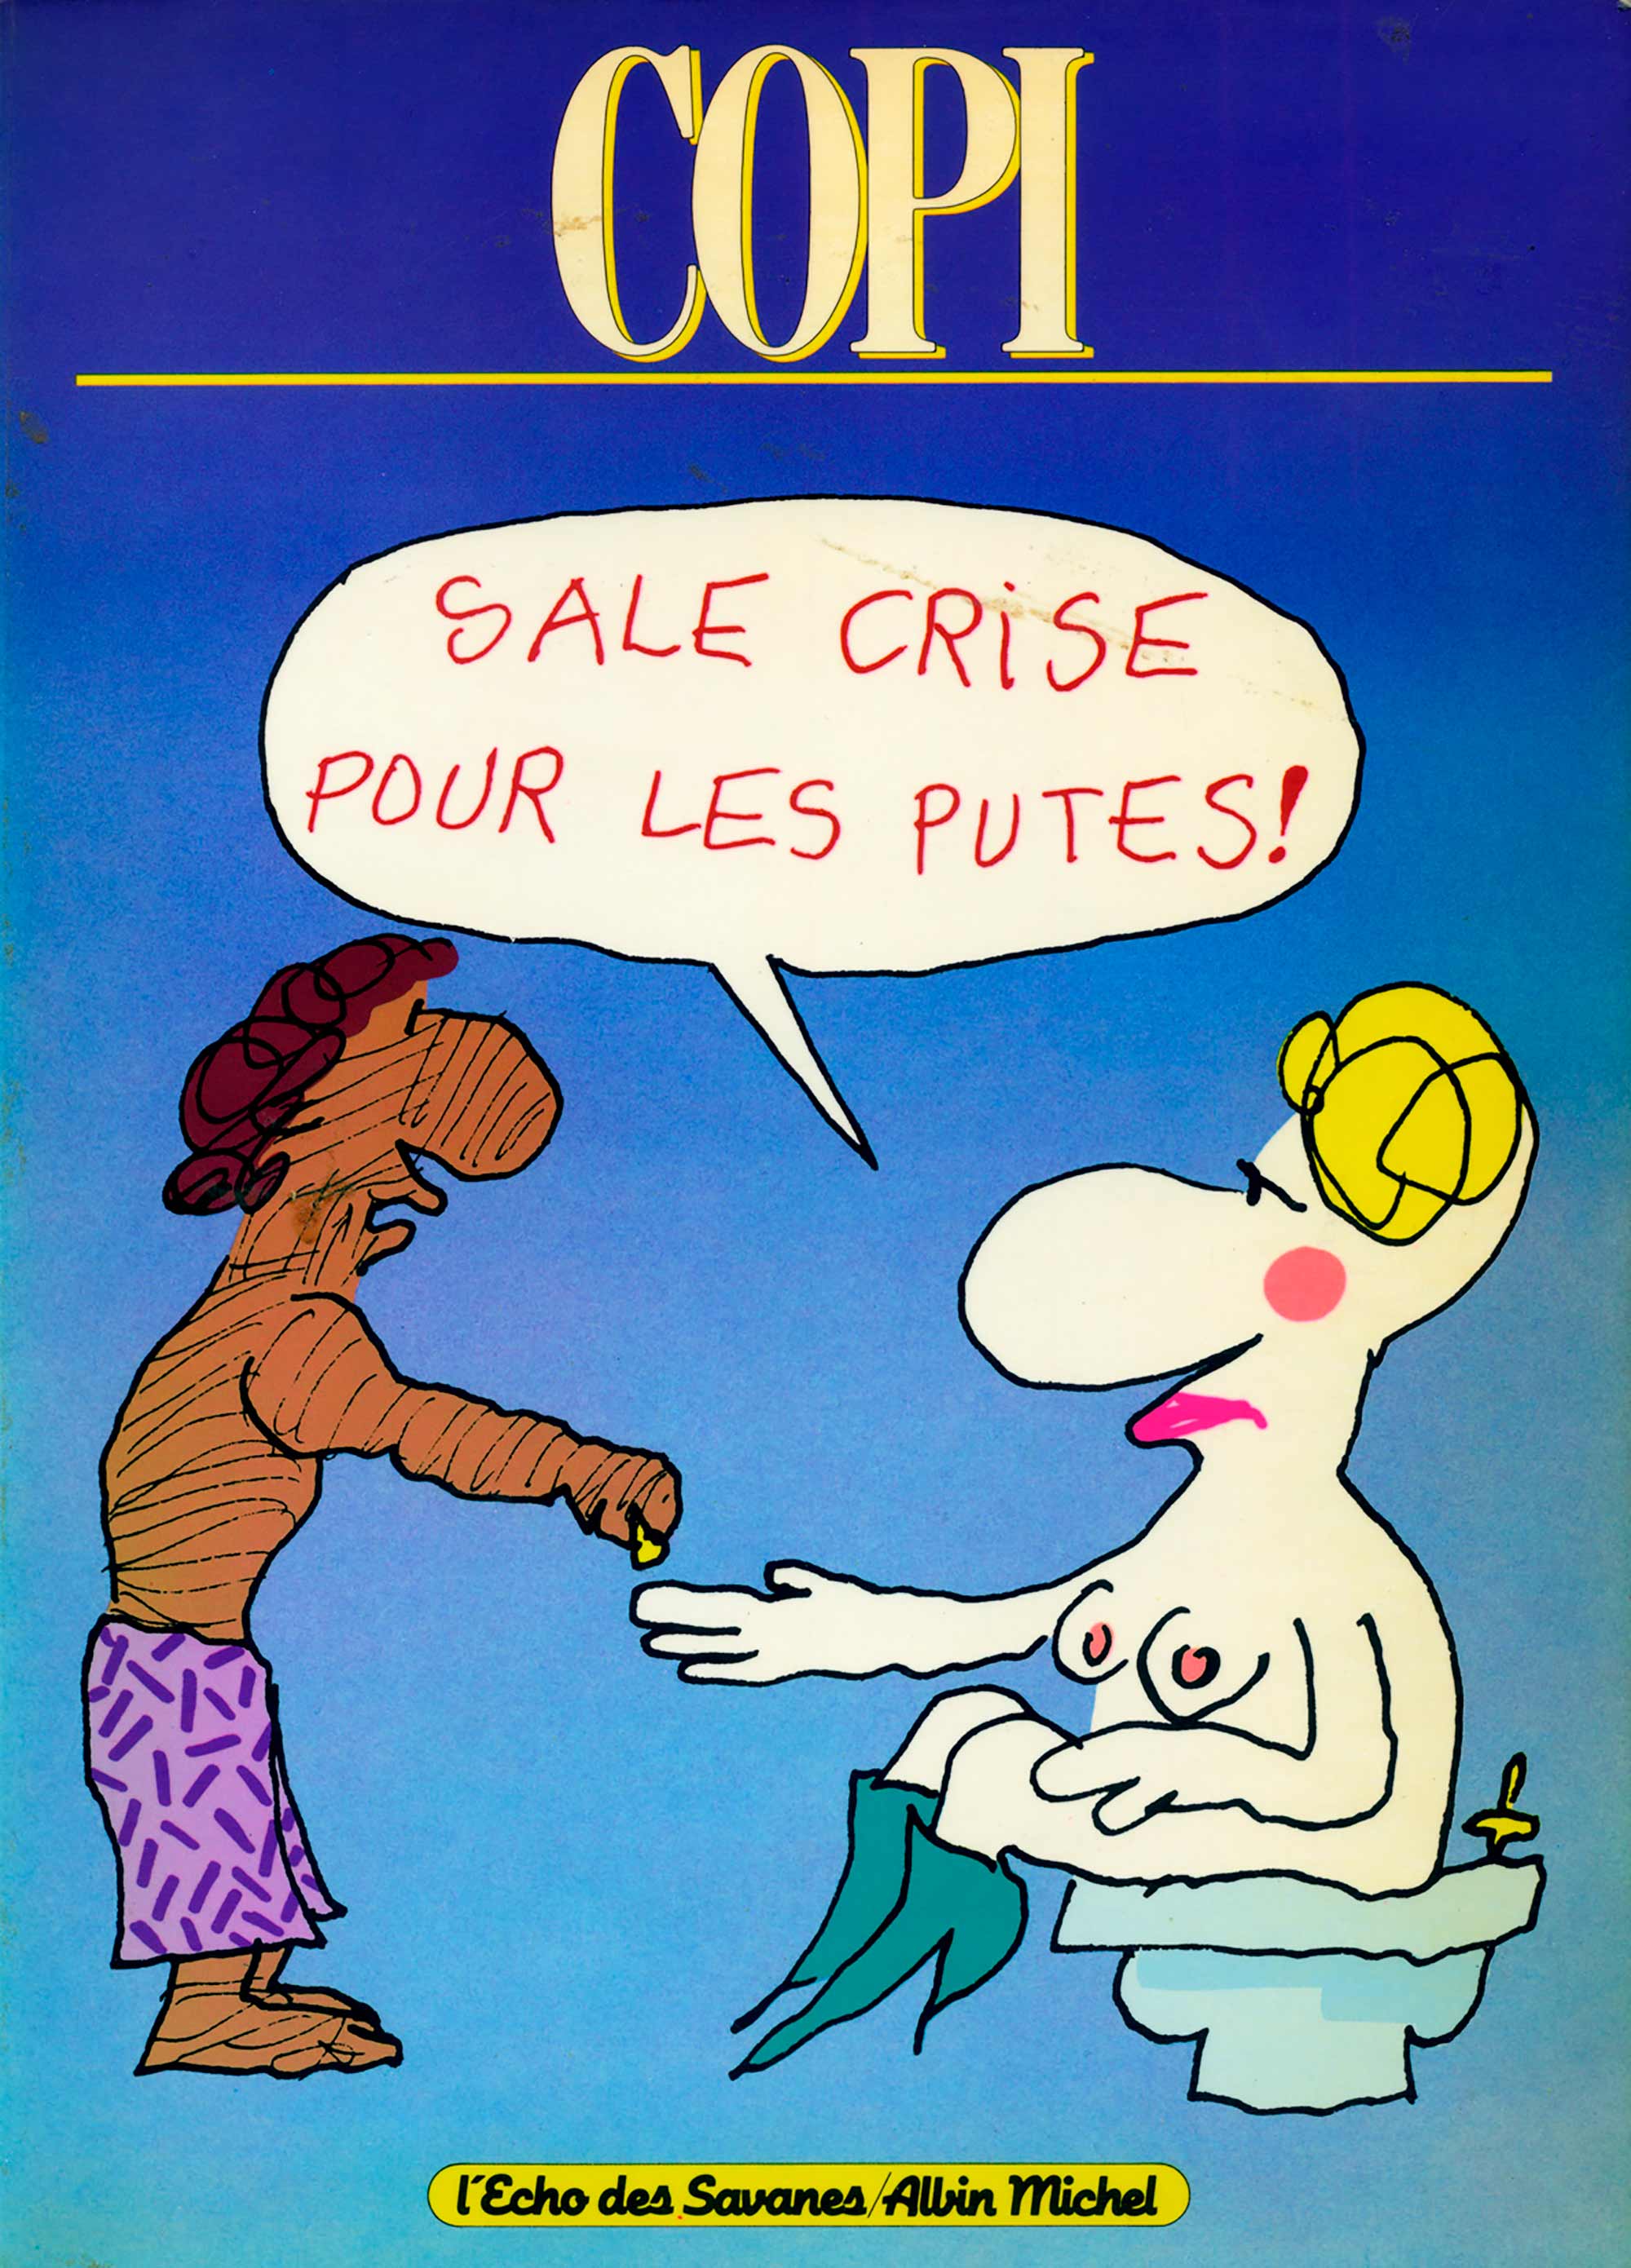 Copi, Sale crise pour les putes!, 1984 